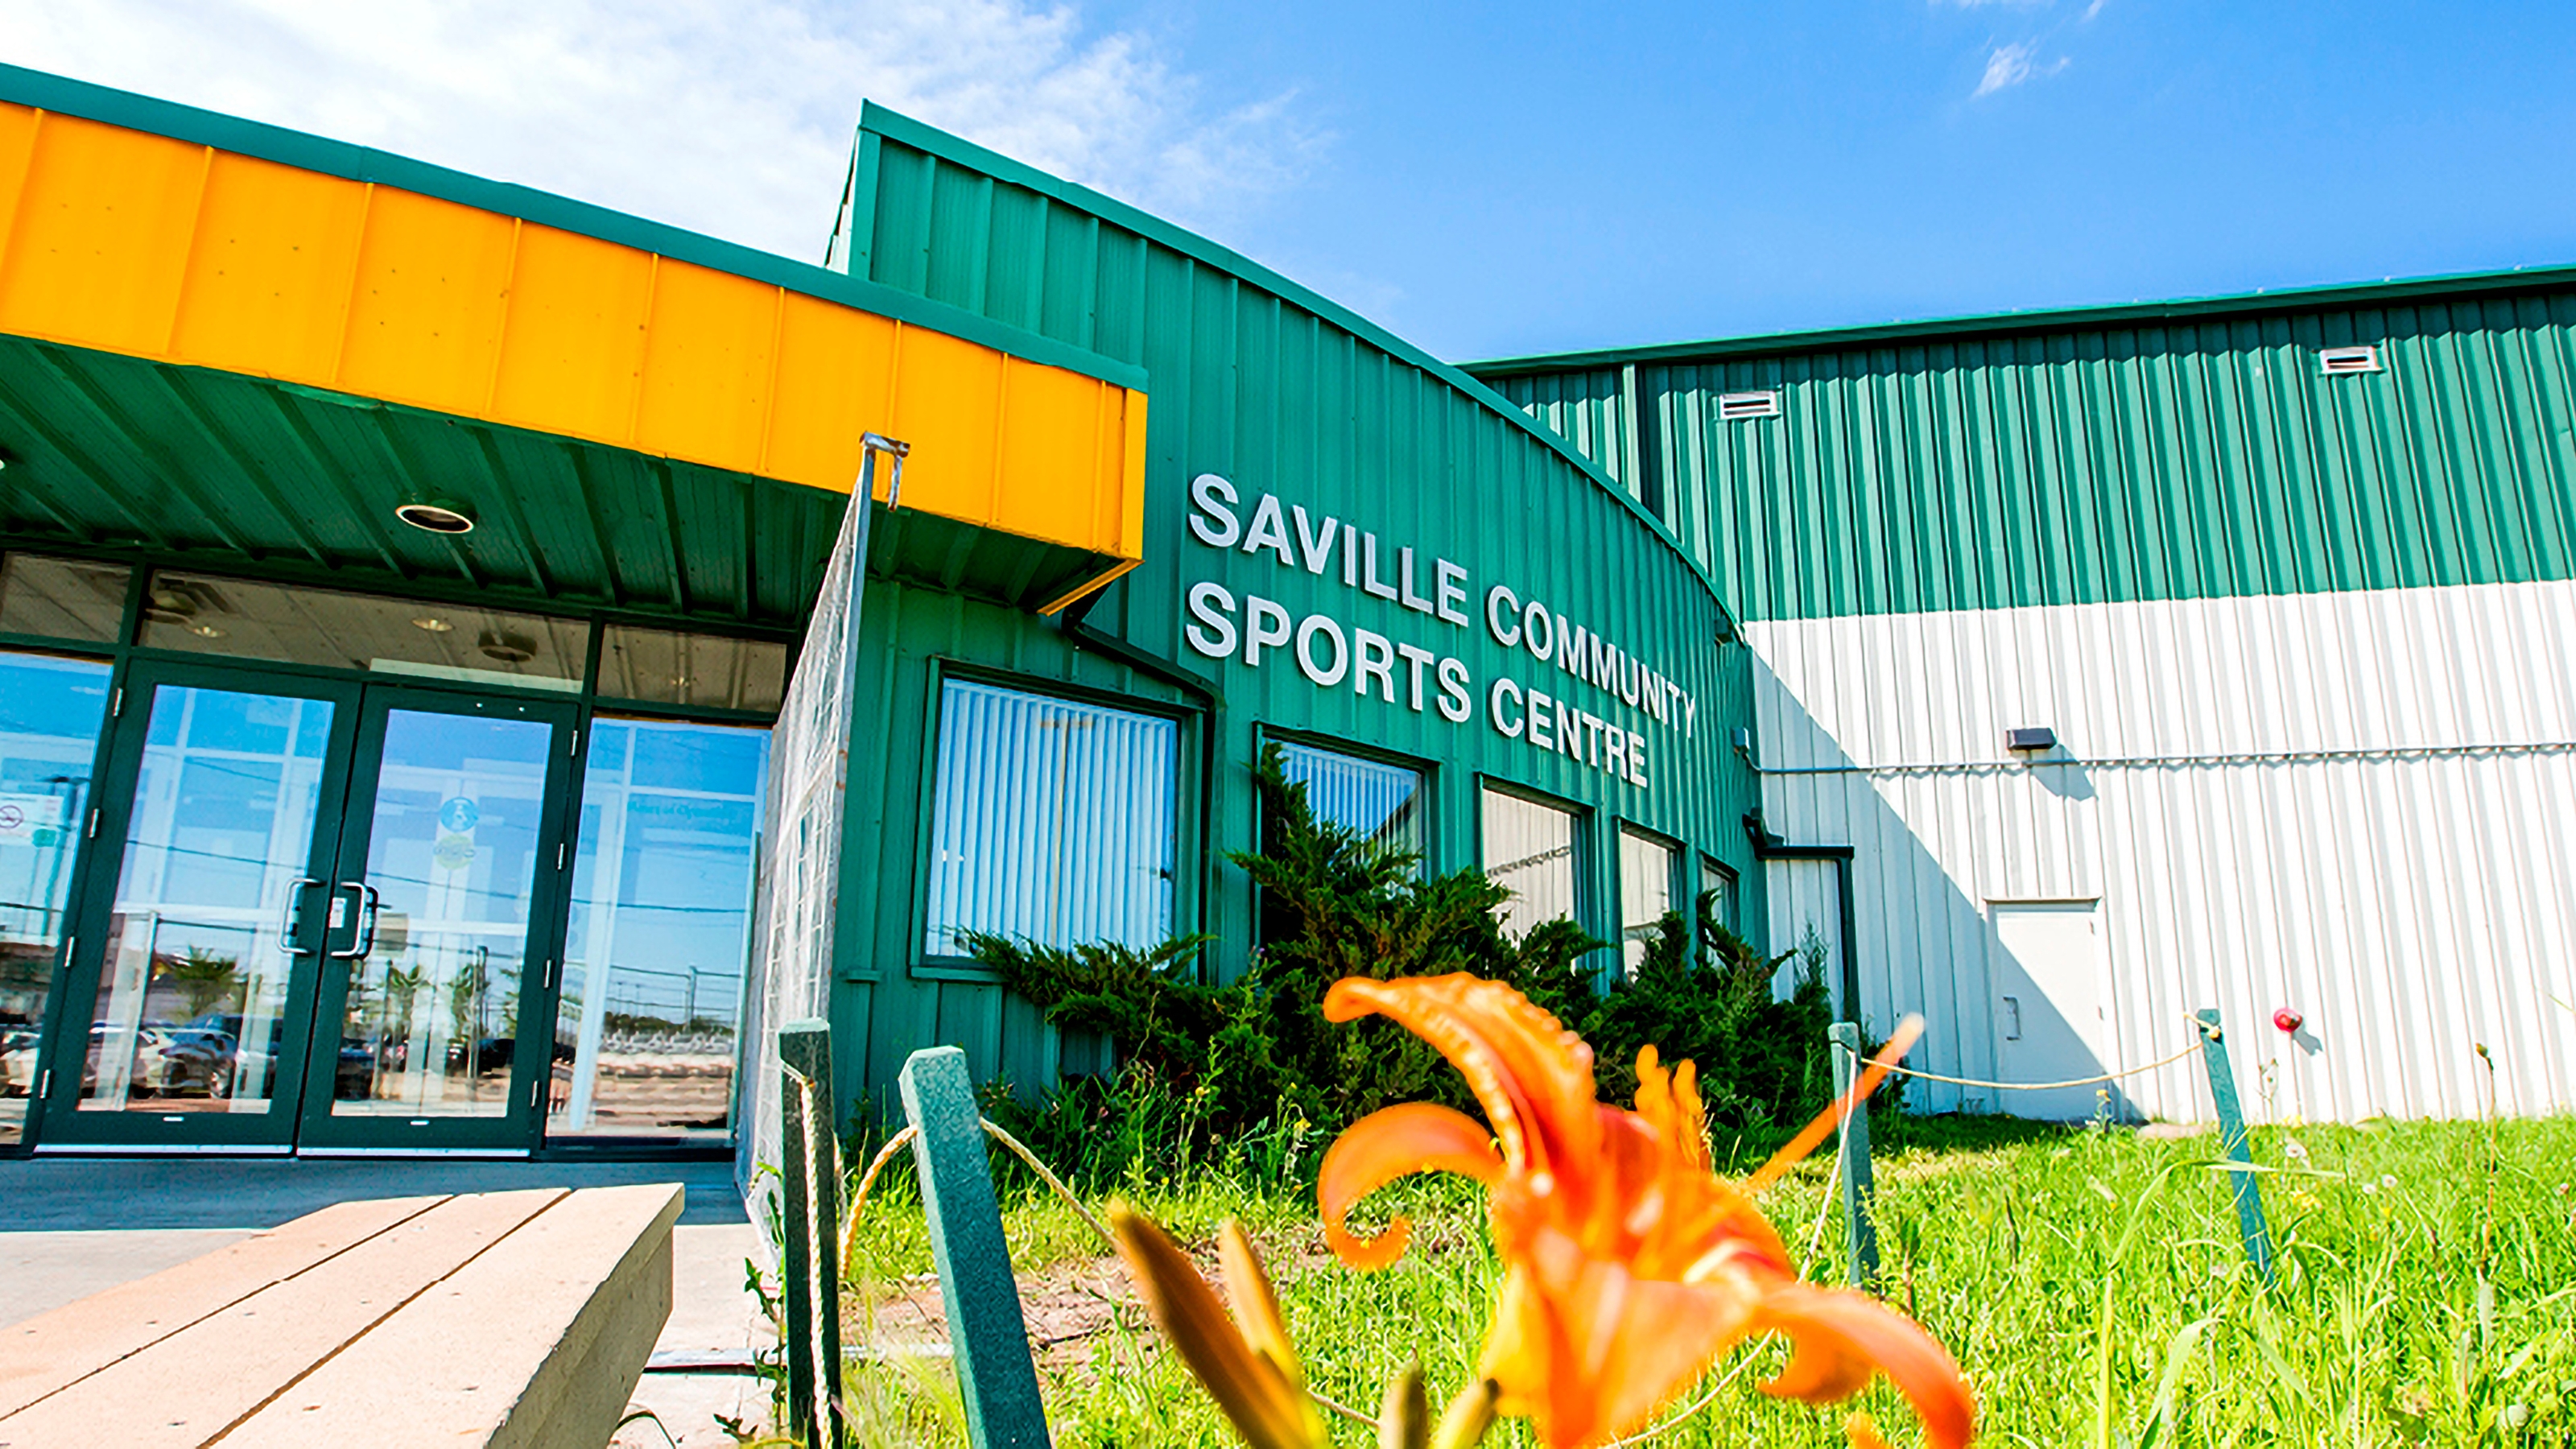 History  Saville Community Sports Centre